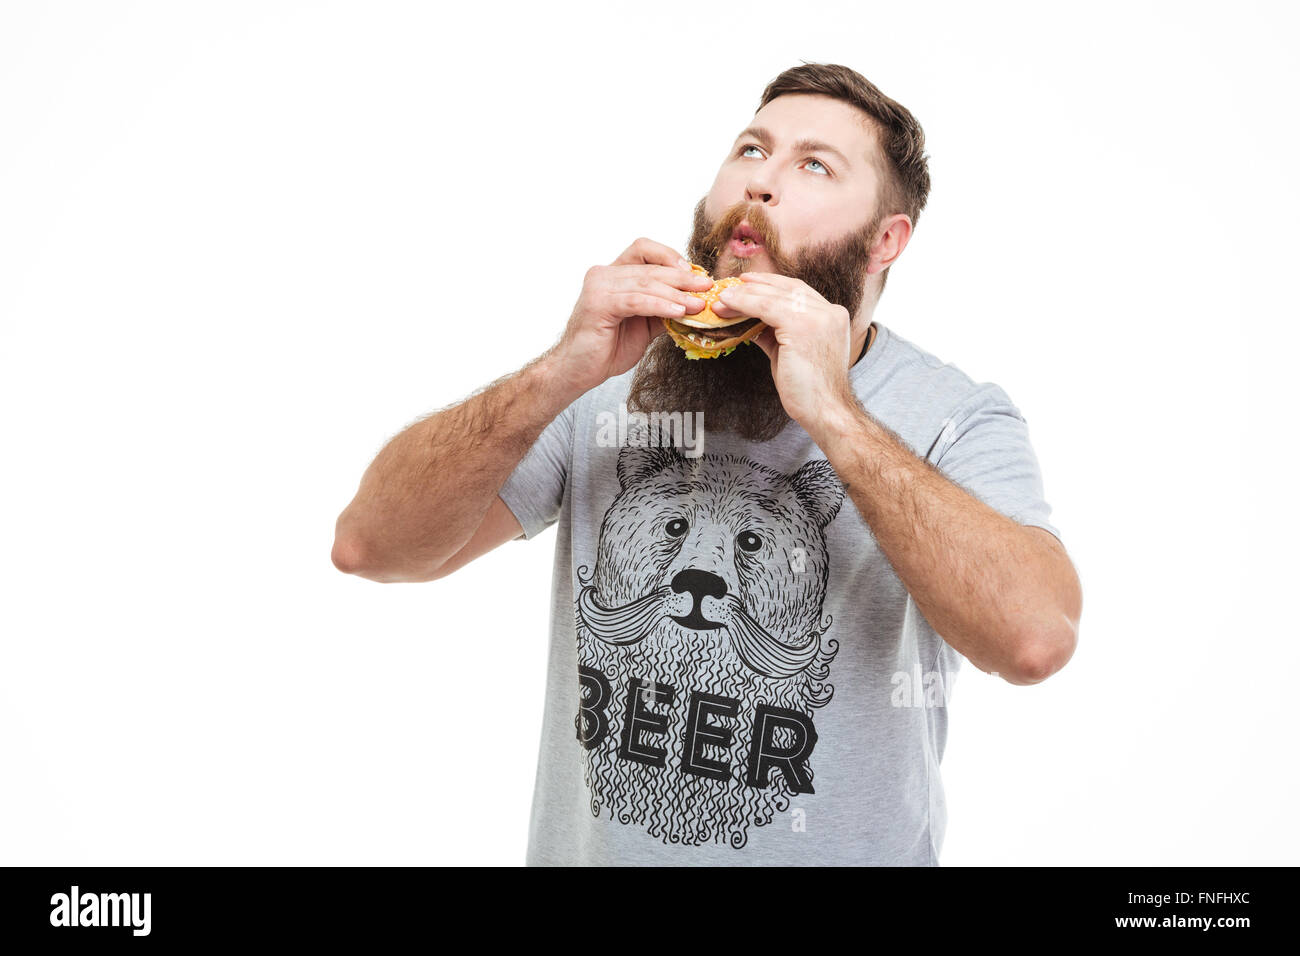 Emozionato uomo bello con la barba di mangiare hamburger e godendo su sfondo bianco Foto Stock